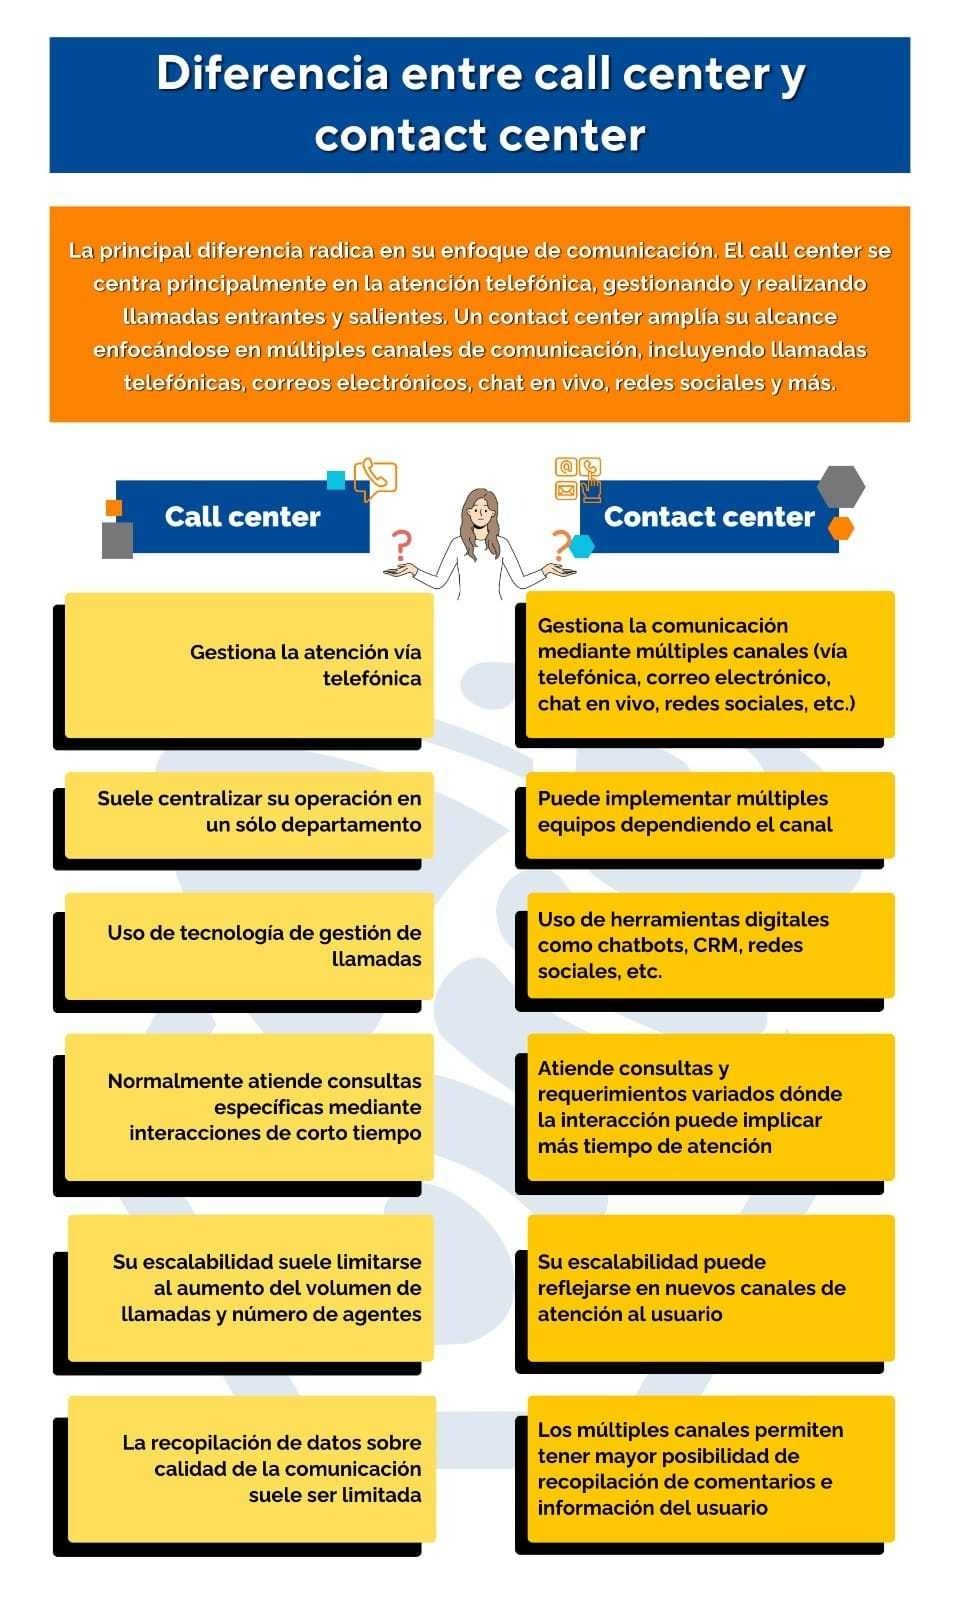 call center vs contact center